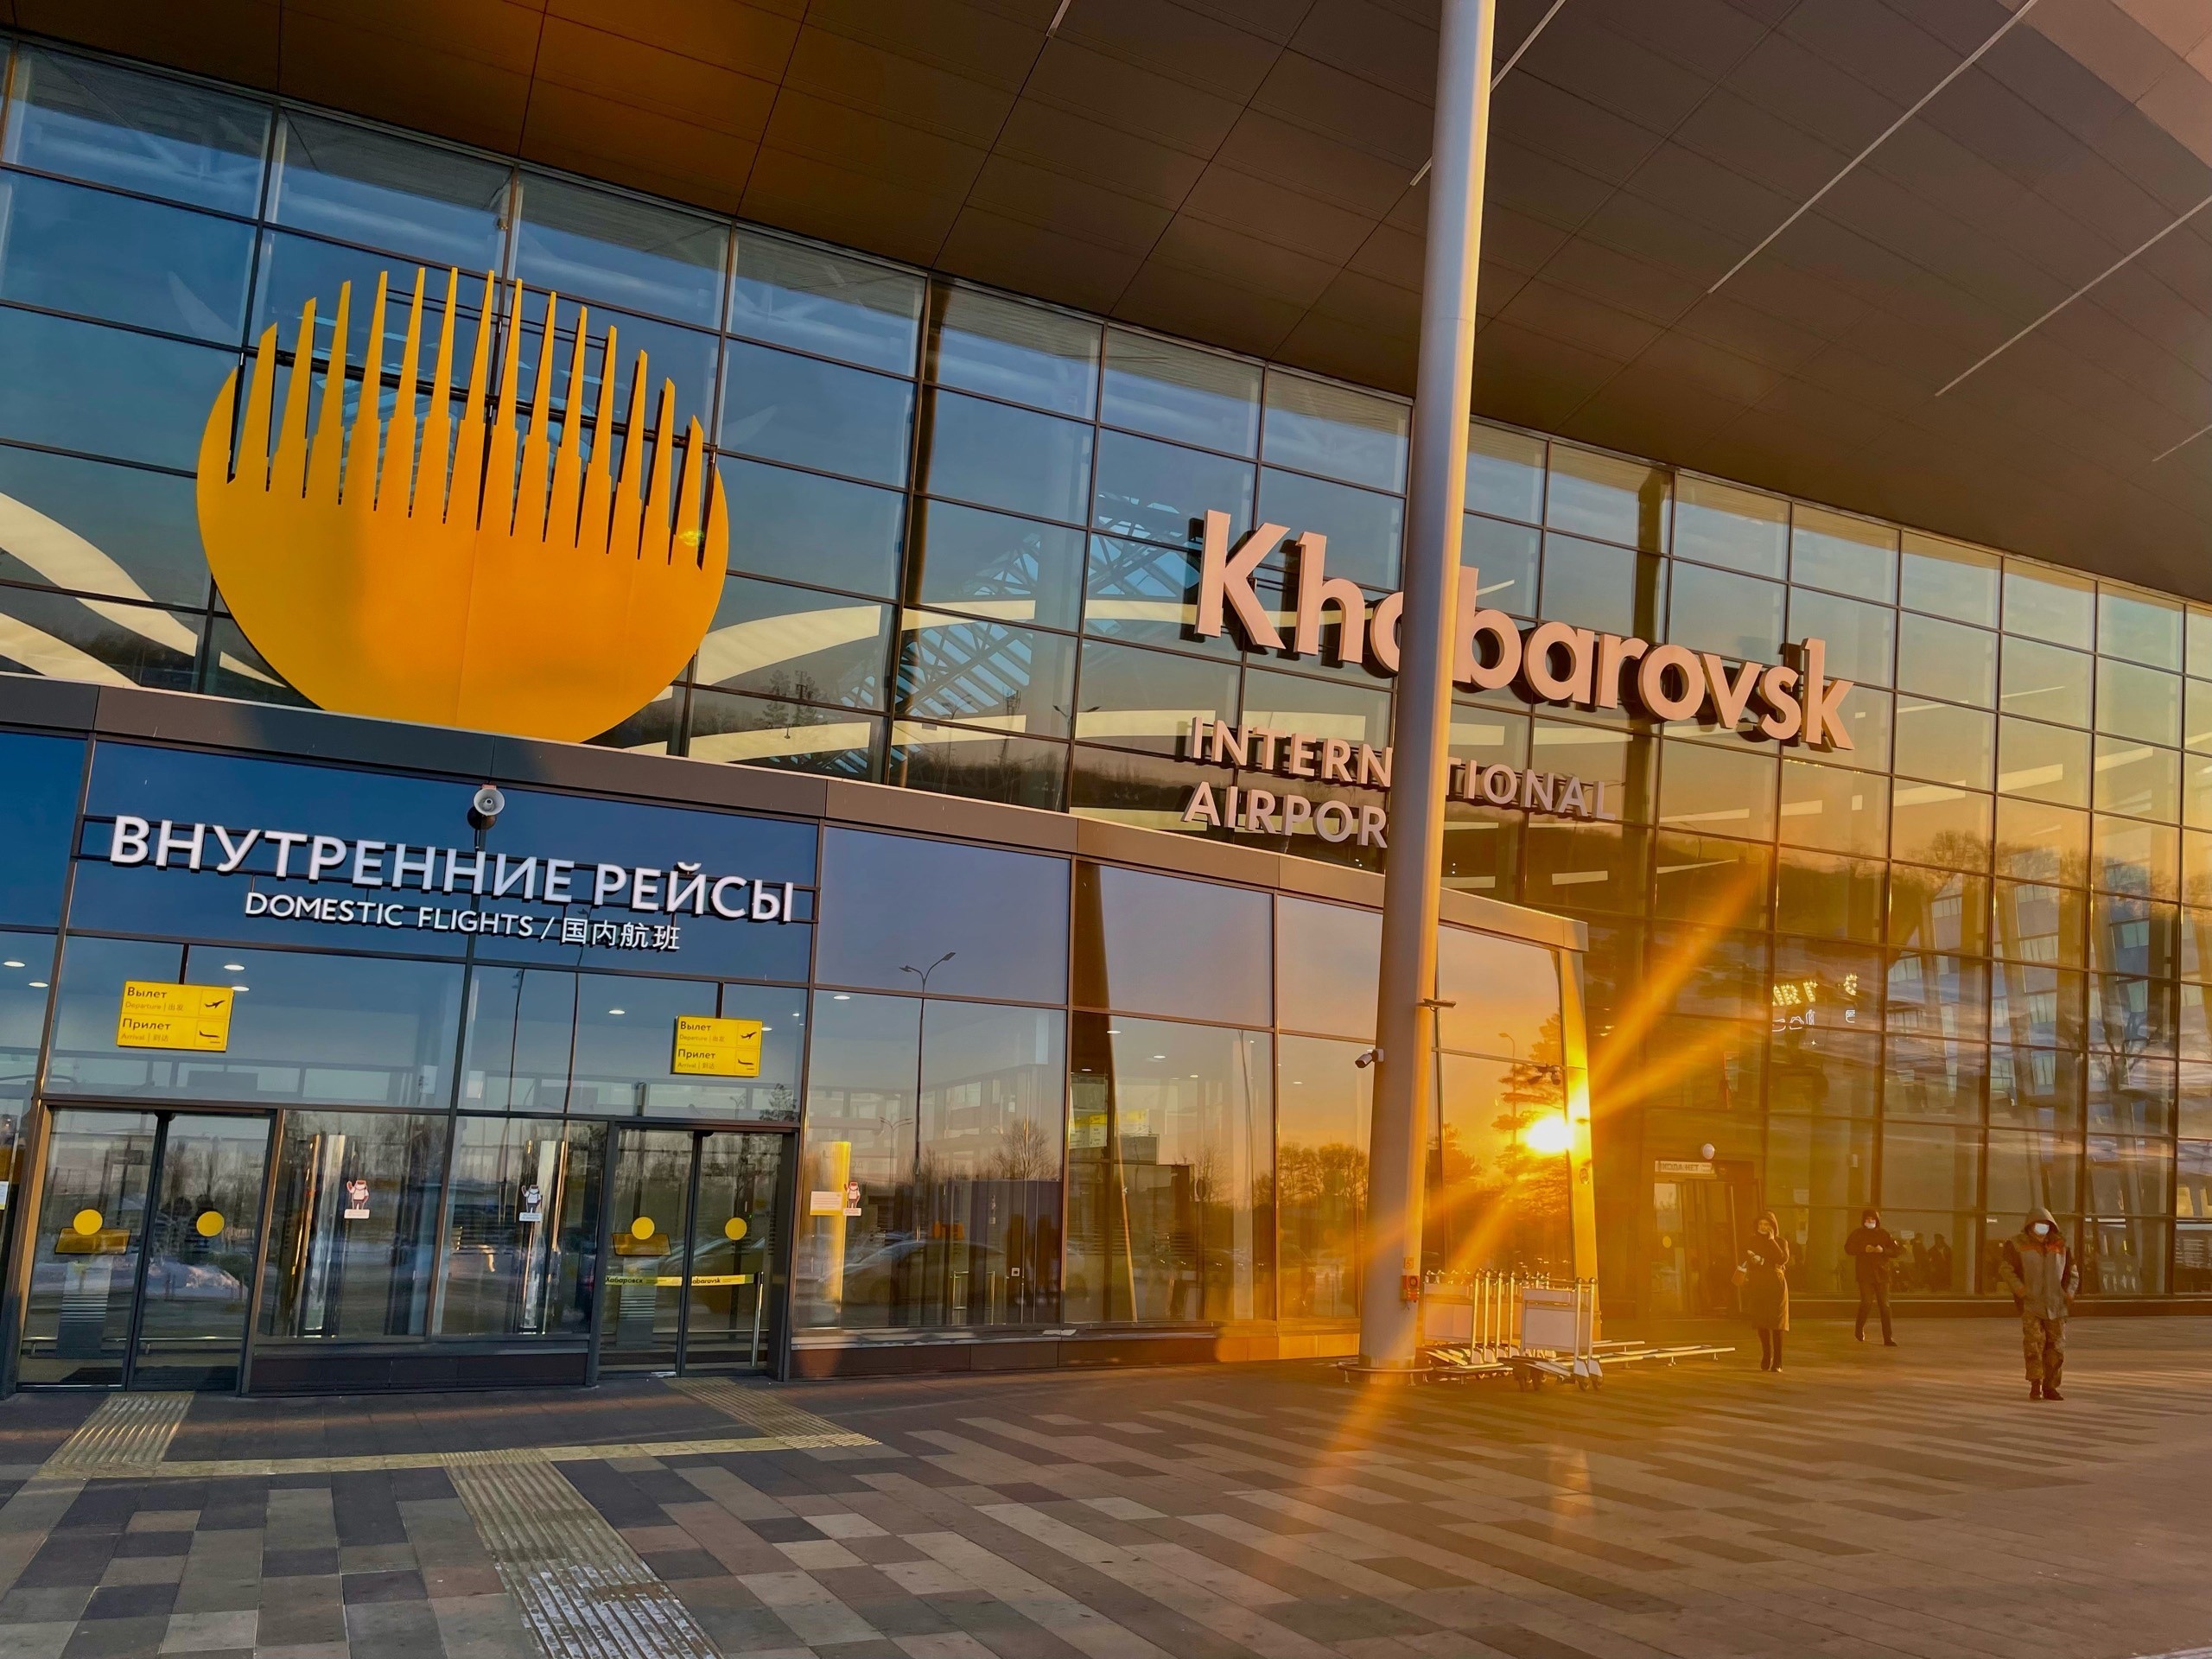 Парковка аэропорта Хабаровск (Новый) ️ как добраться, платные и бесплатные стоянки, схема аэропорта